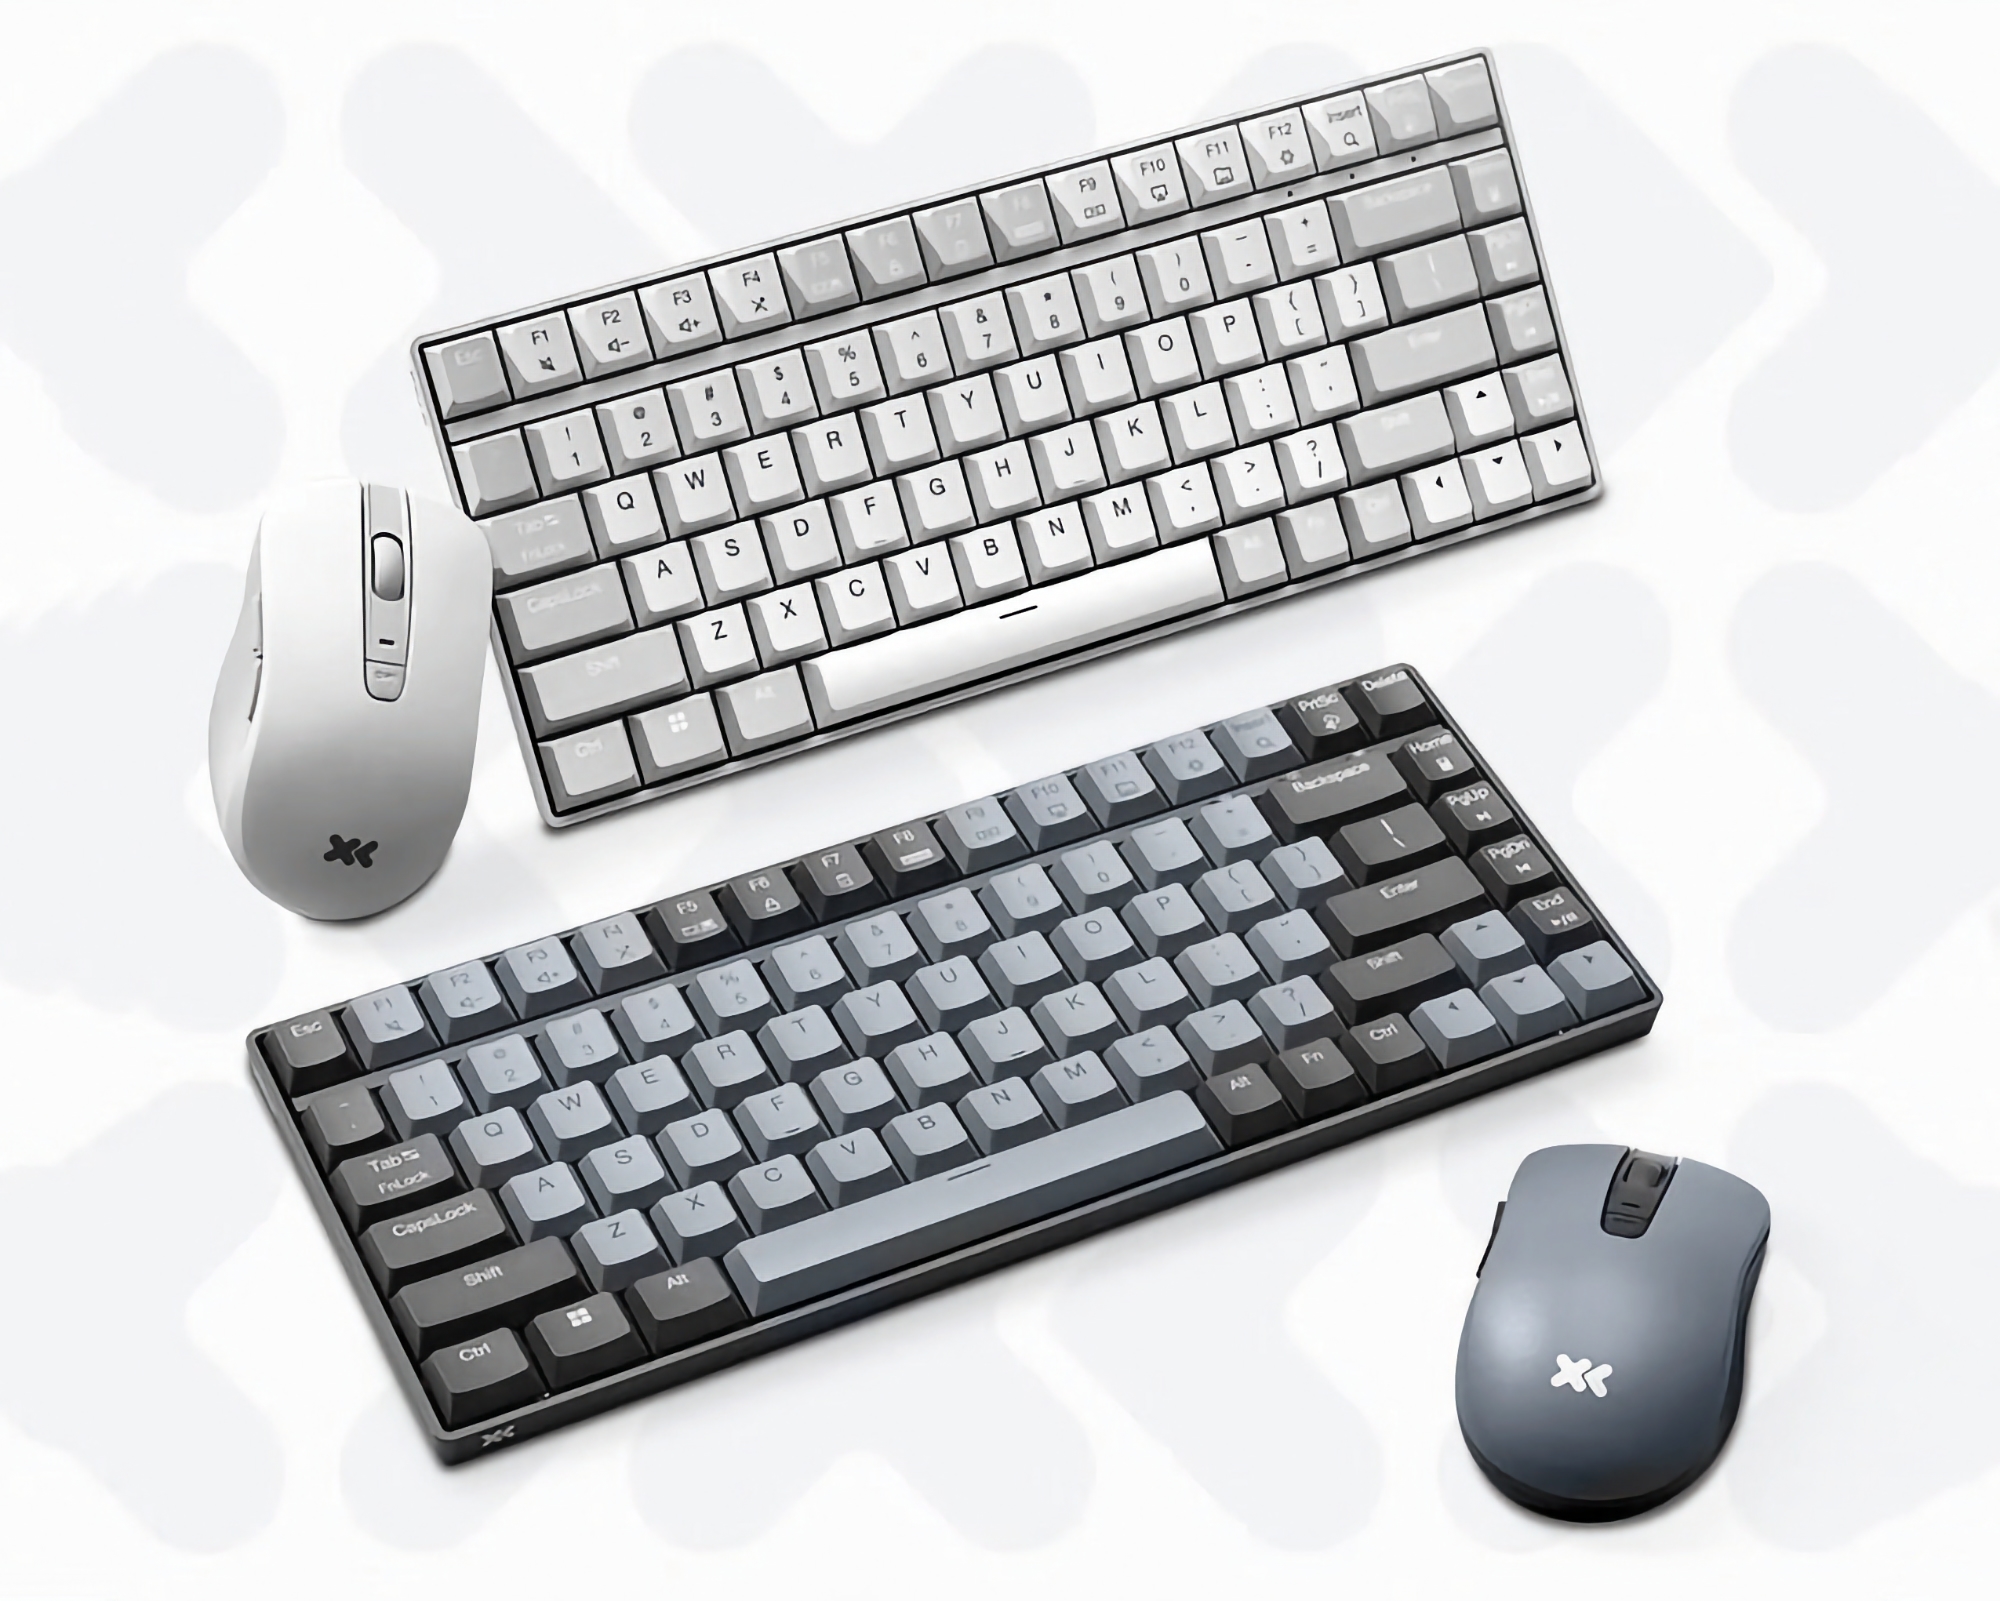 Kit económico: Lenovo presenta un teclado y ratón inalámbricos por 21 dólares